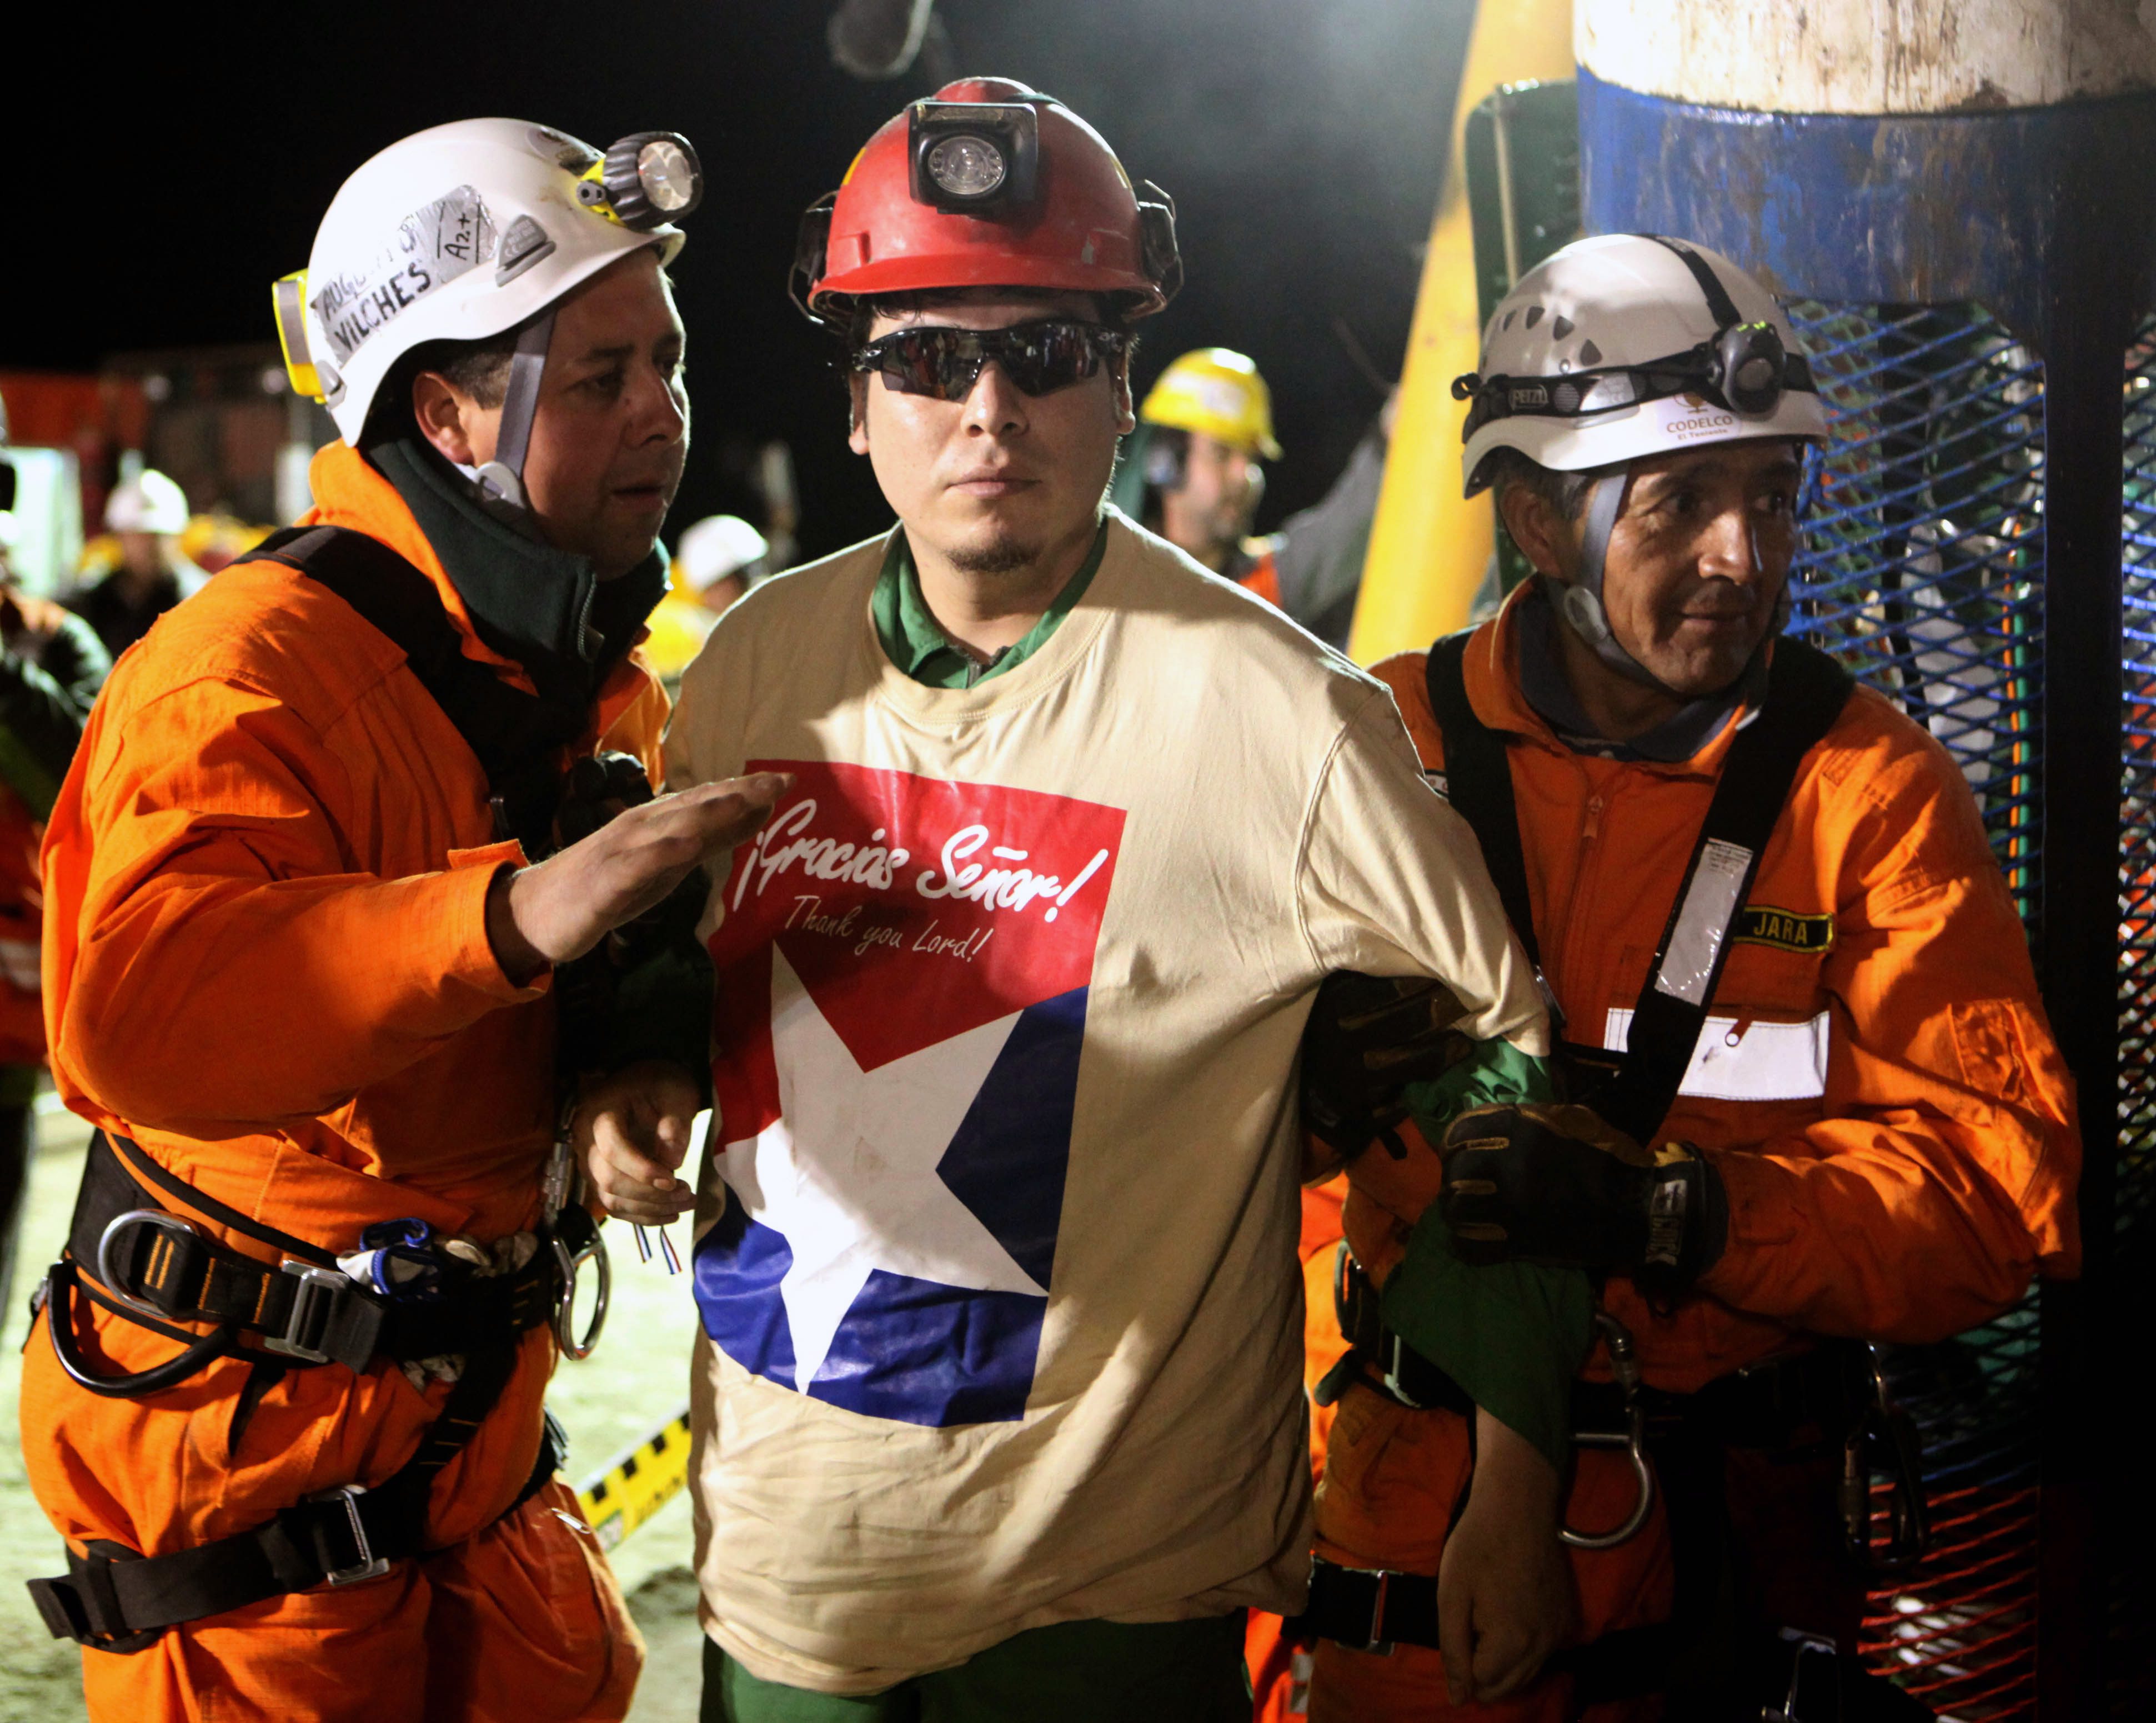 14/10/2010. Efter 69 dygn under jord räddas till slut samtliga 33 gruvarbetare som suttit instängda i en rasad gruva i Chile. Männen betraktas som nationalhjältar och hyllas intensivt.